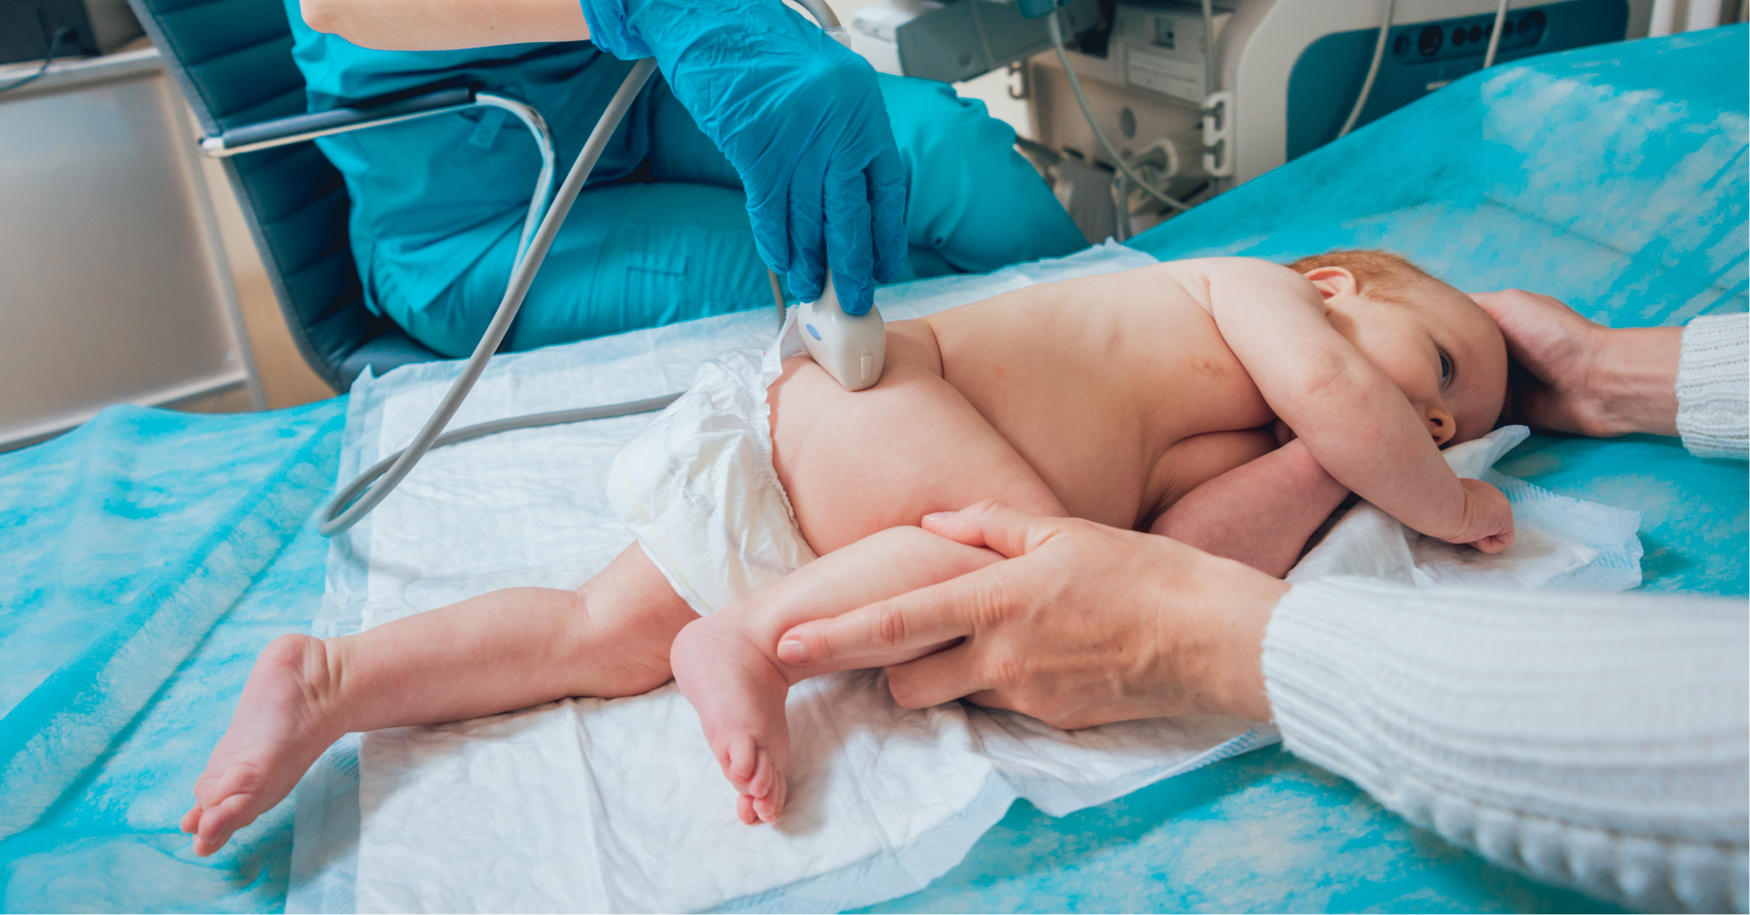 Hüftultraschalluntersuchung beim Säugling